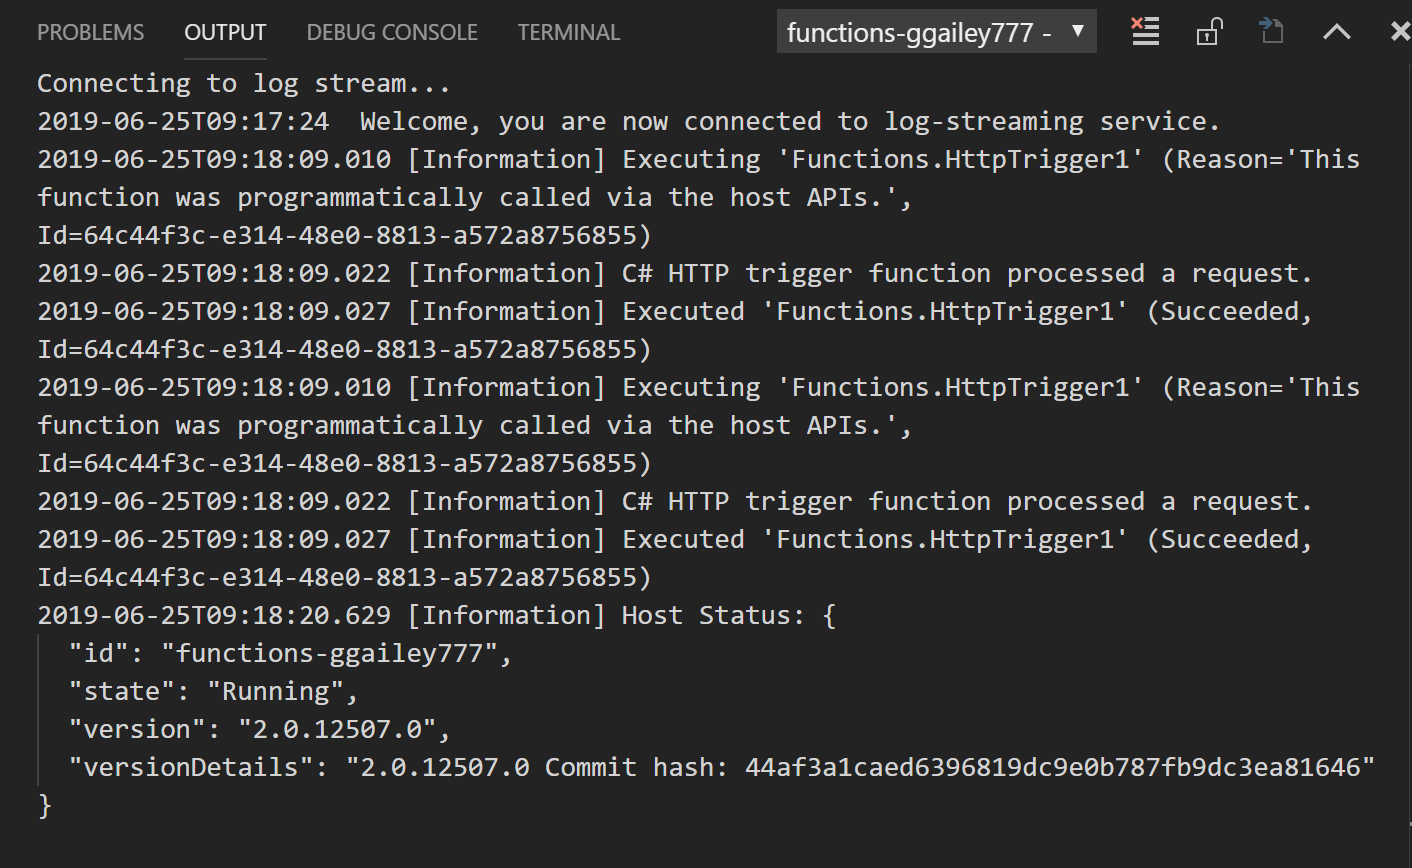 Screenshot per l'output dei log di streaming per il trigger H T T P.